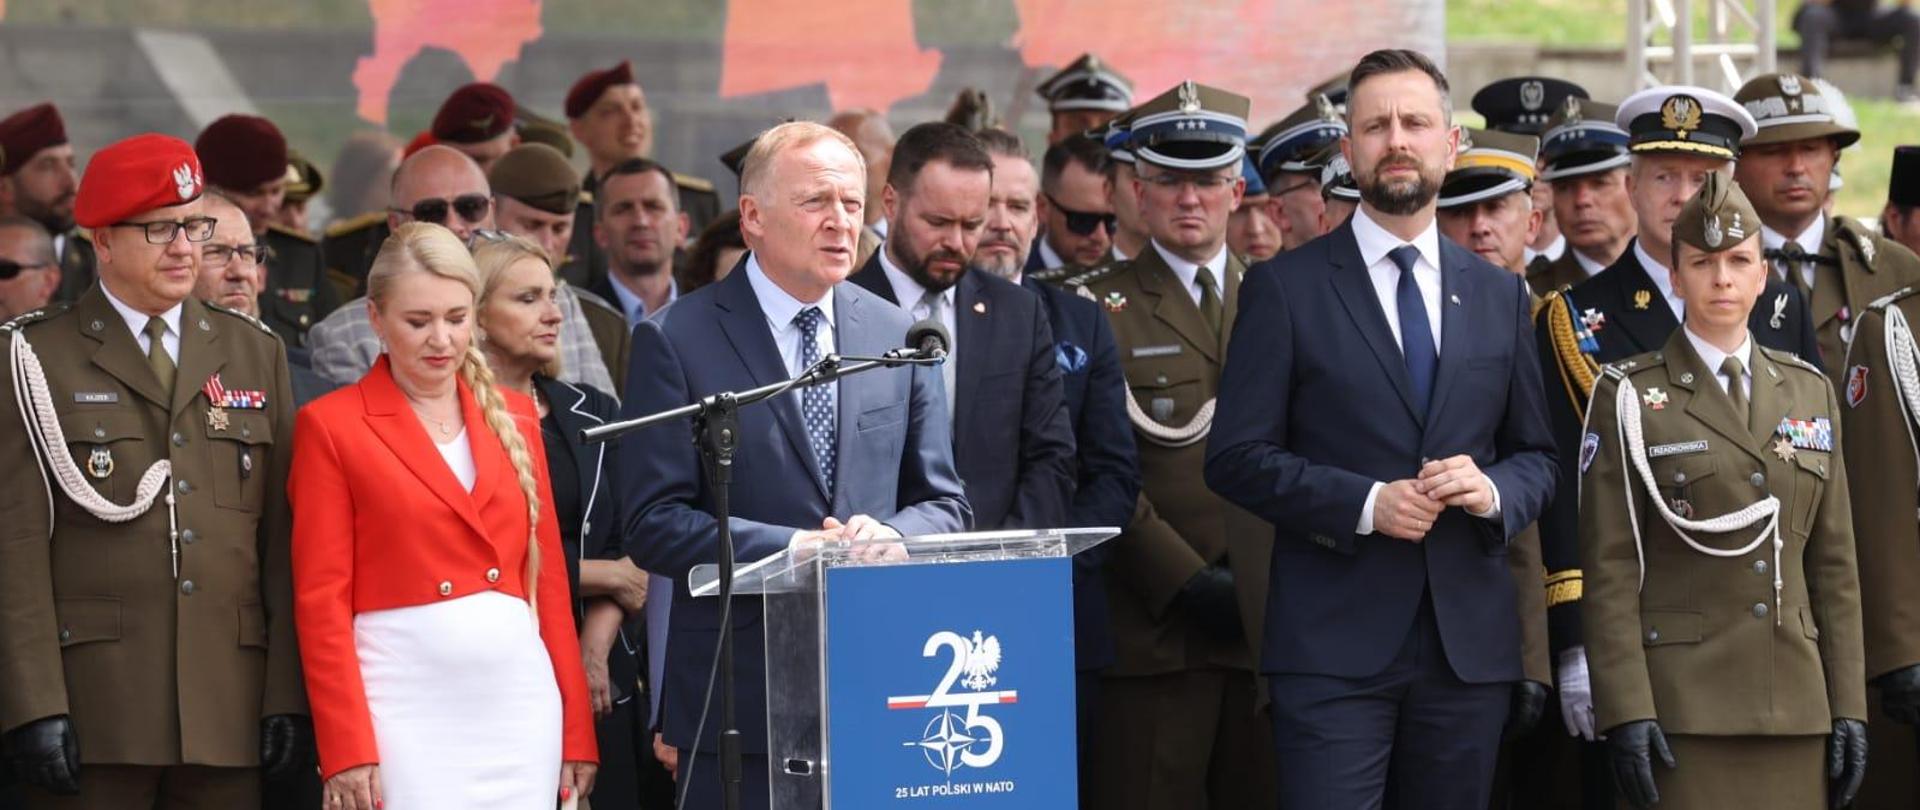 Wiceminister Czesław Mroczek stoi przy mównicy. Po lewej kobieta w czerwonej marynarce, po prawej wicepremier Kosiniak-Kamysz. W tle osoby ubrane w mundury żołnierskie 